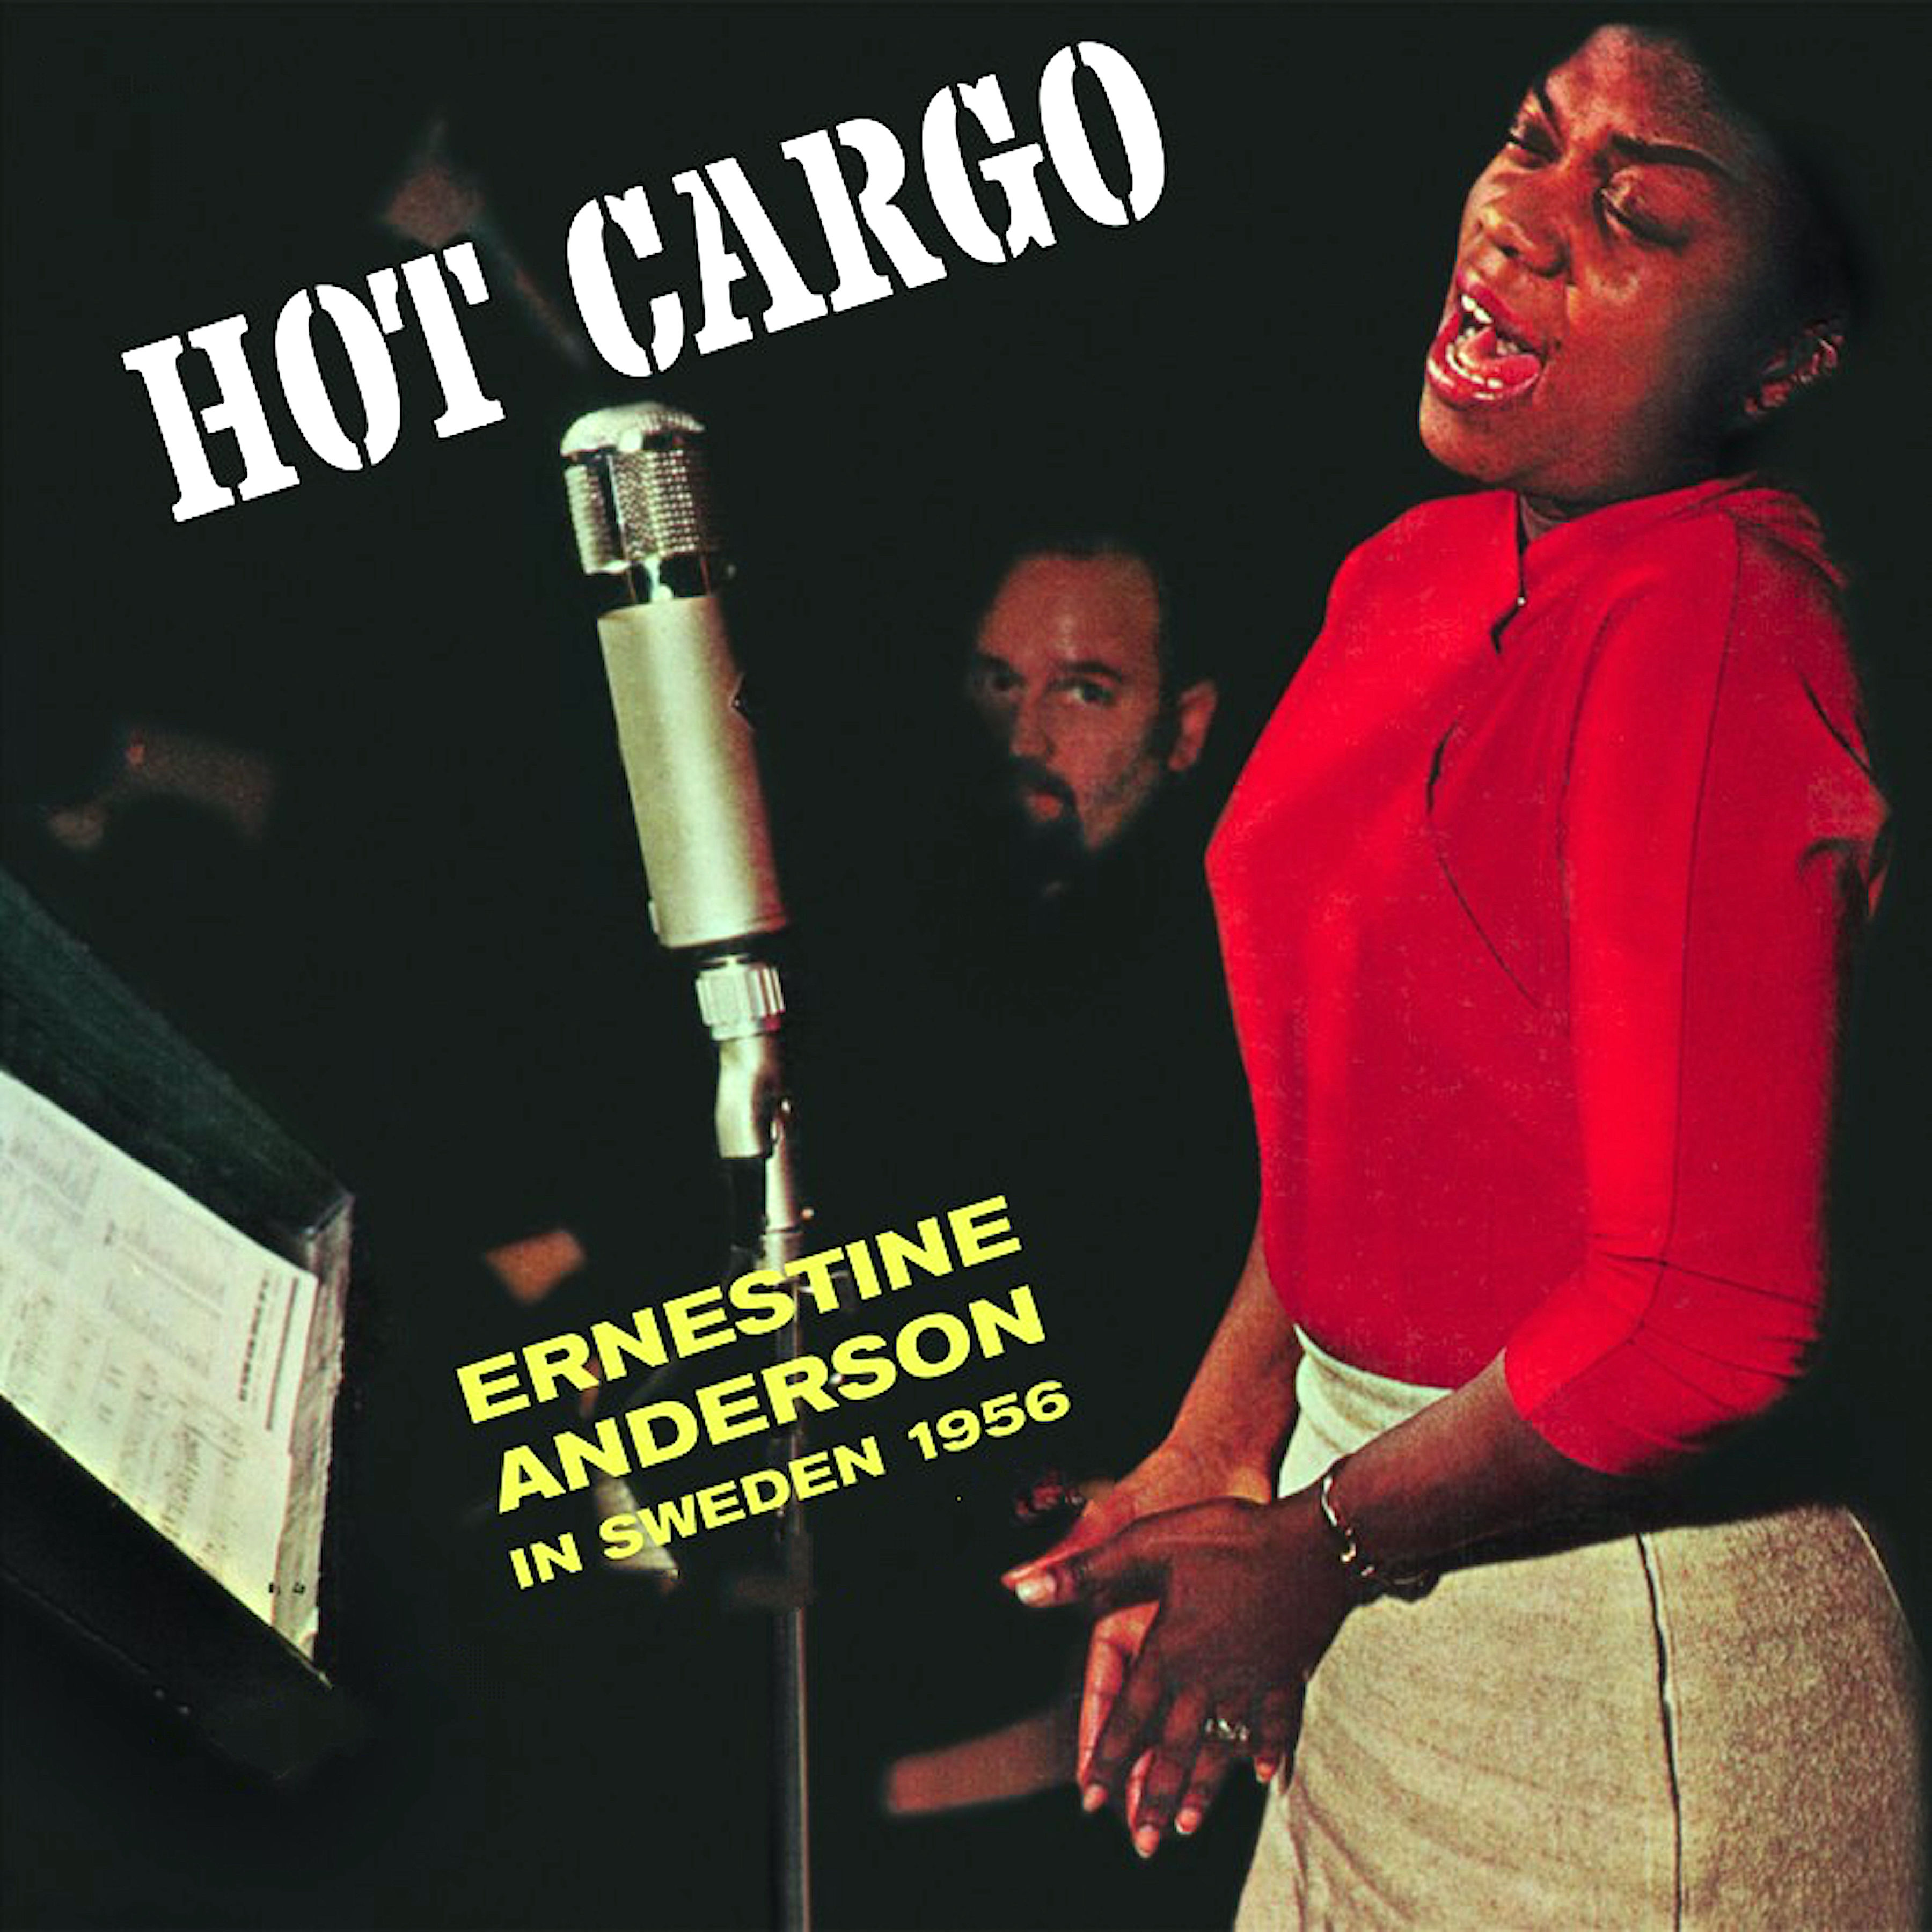 Ernestine Anderson - Hot Cargo - In Sweden 1956 (1956/2021) [FLAC 24bit/96kHz]